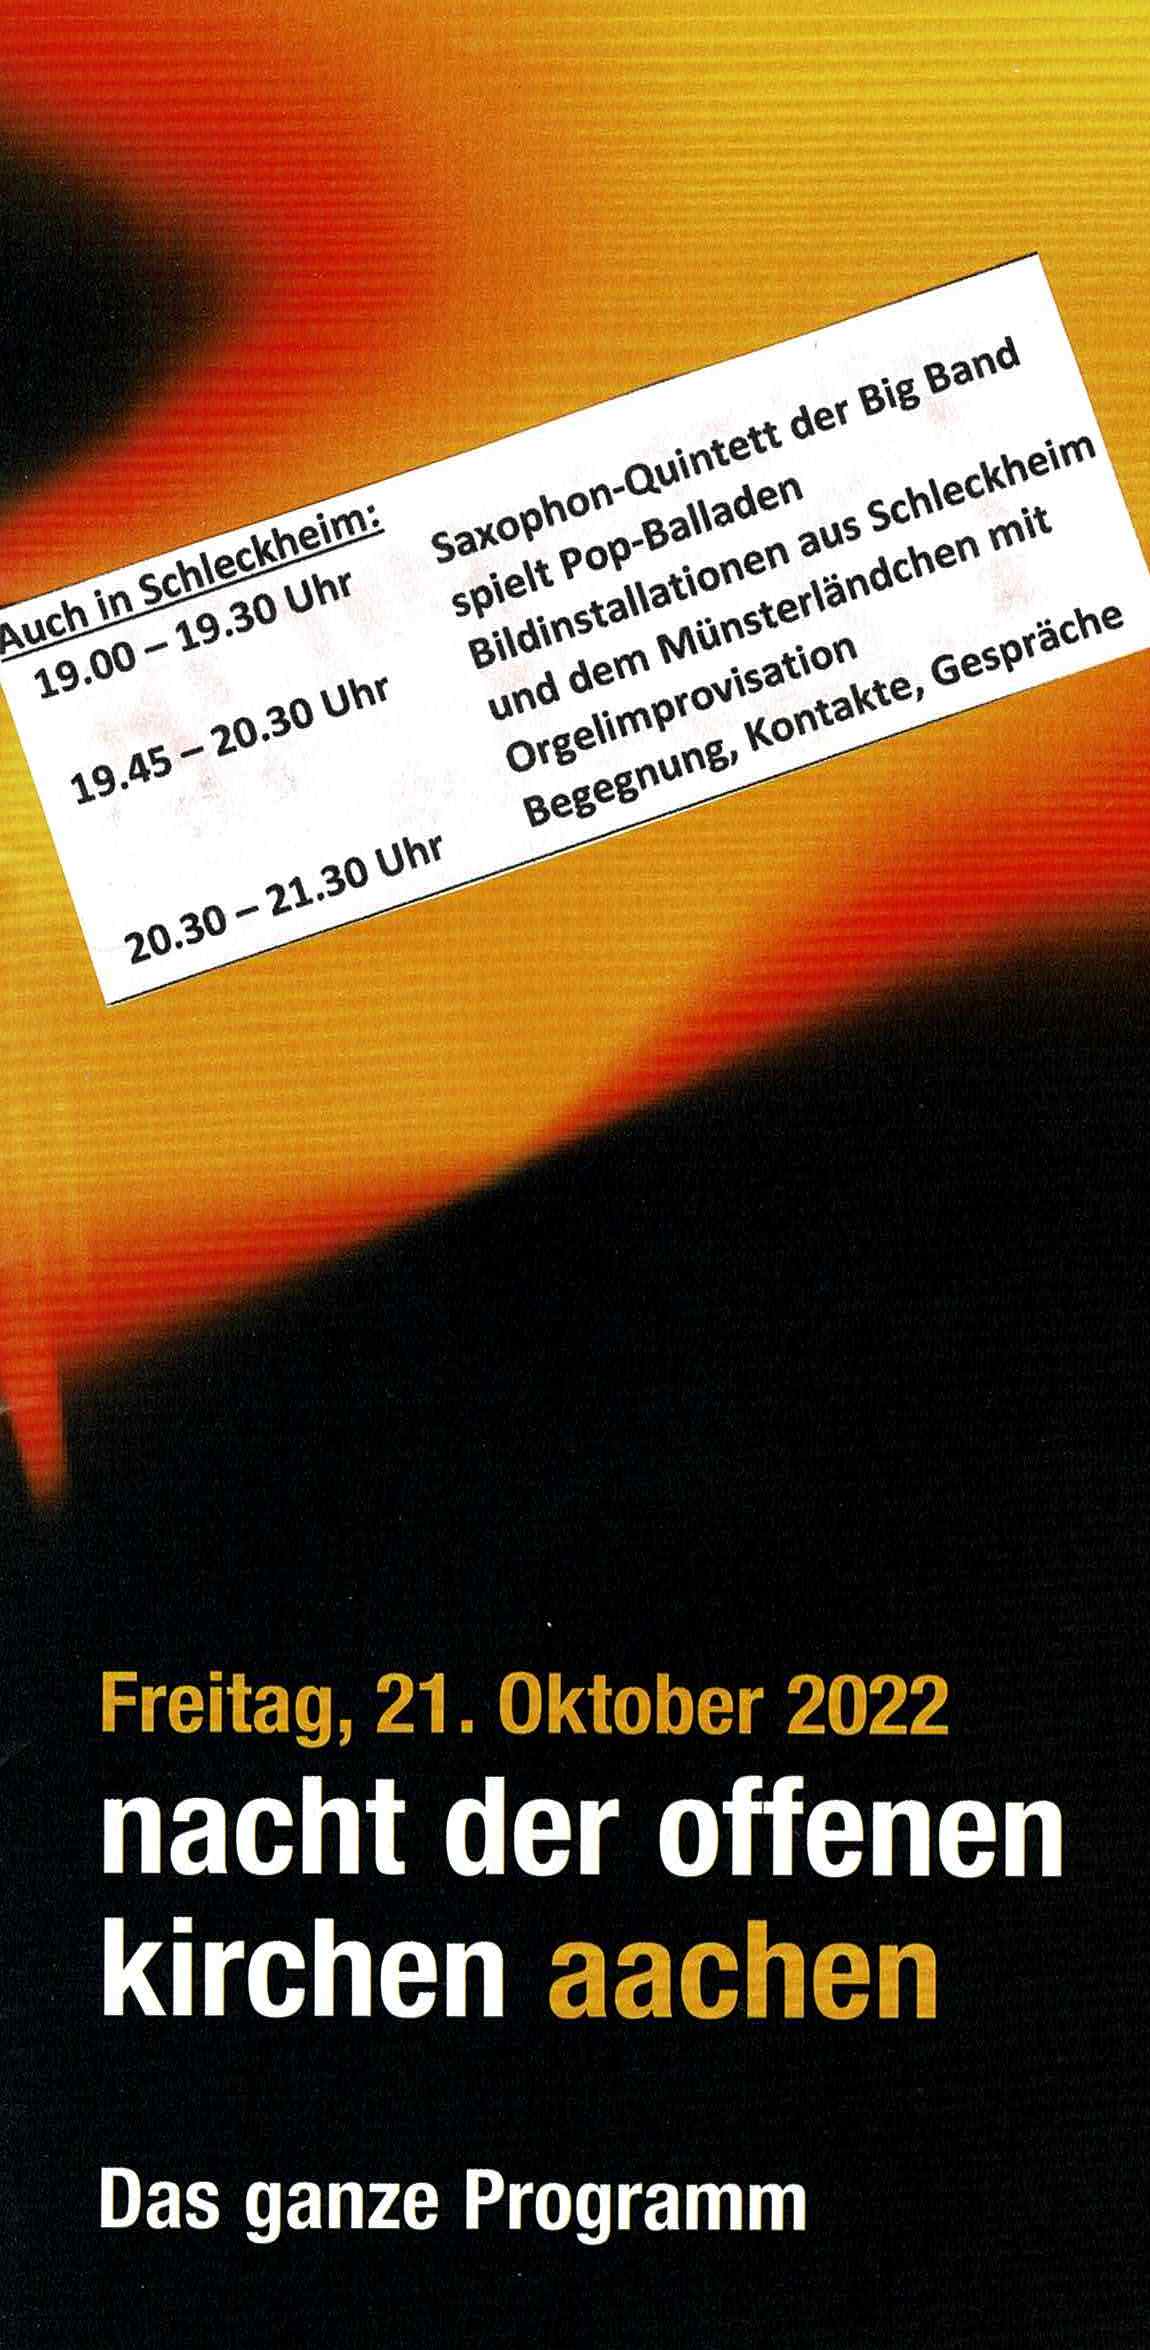 Nacht der Offenen Kirchen Aachen 2022 Programmheft Seite 1 Titelseite